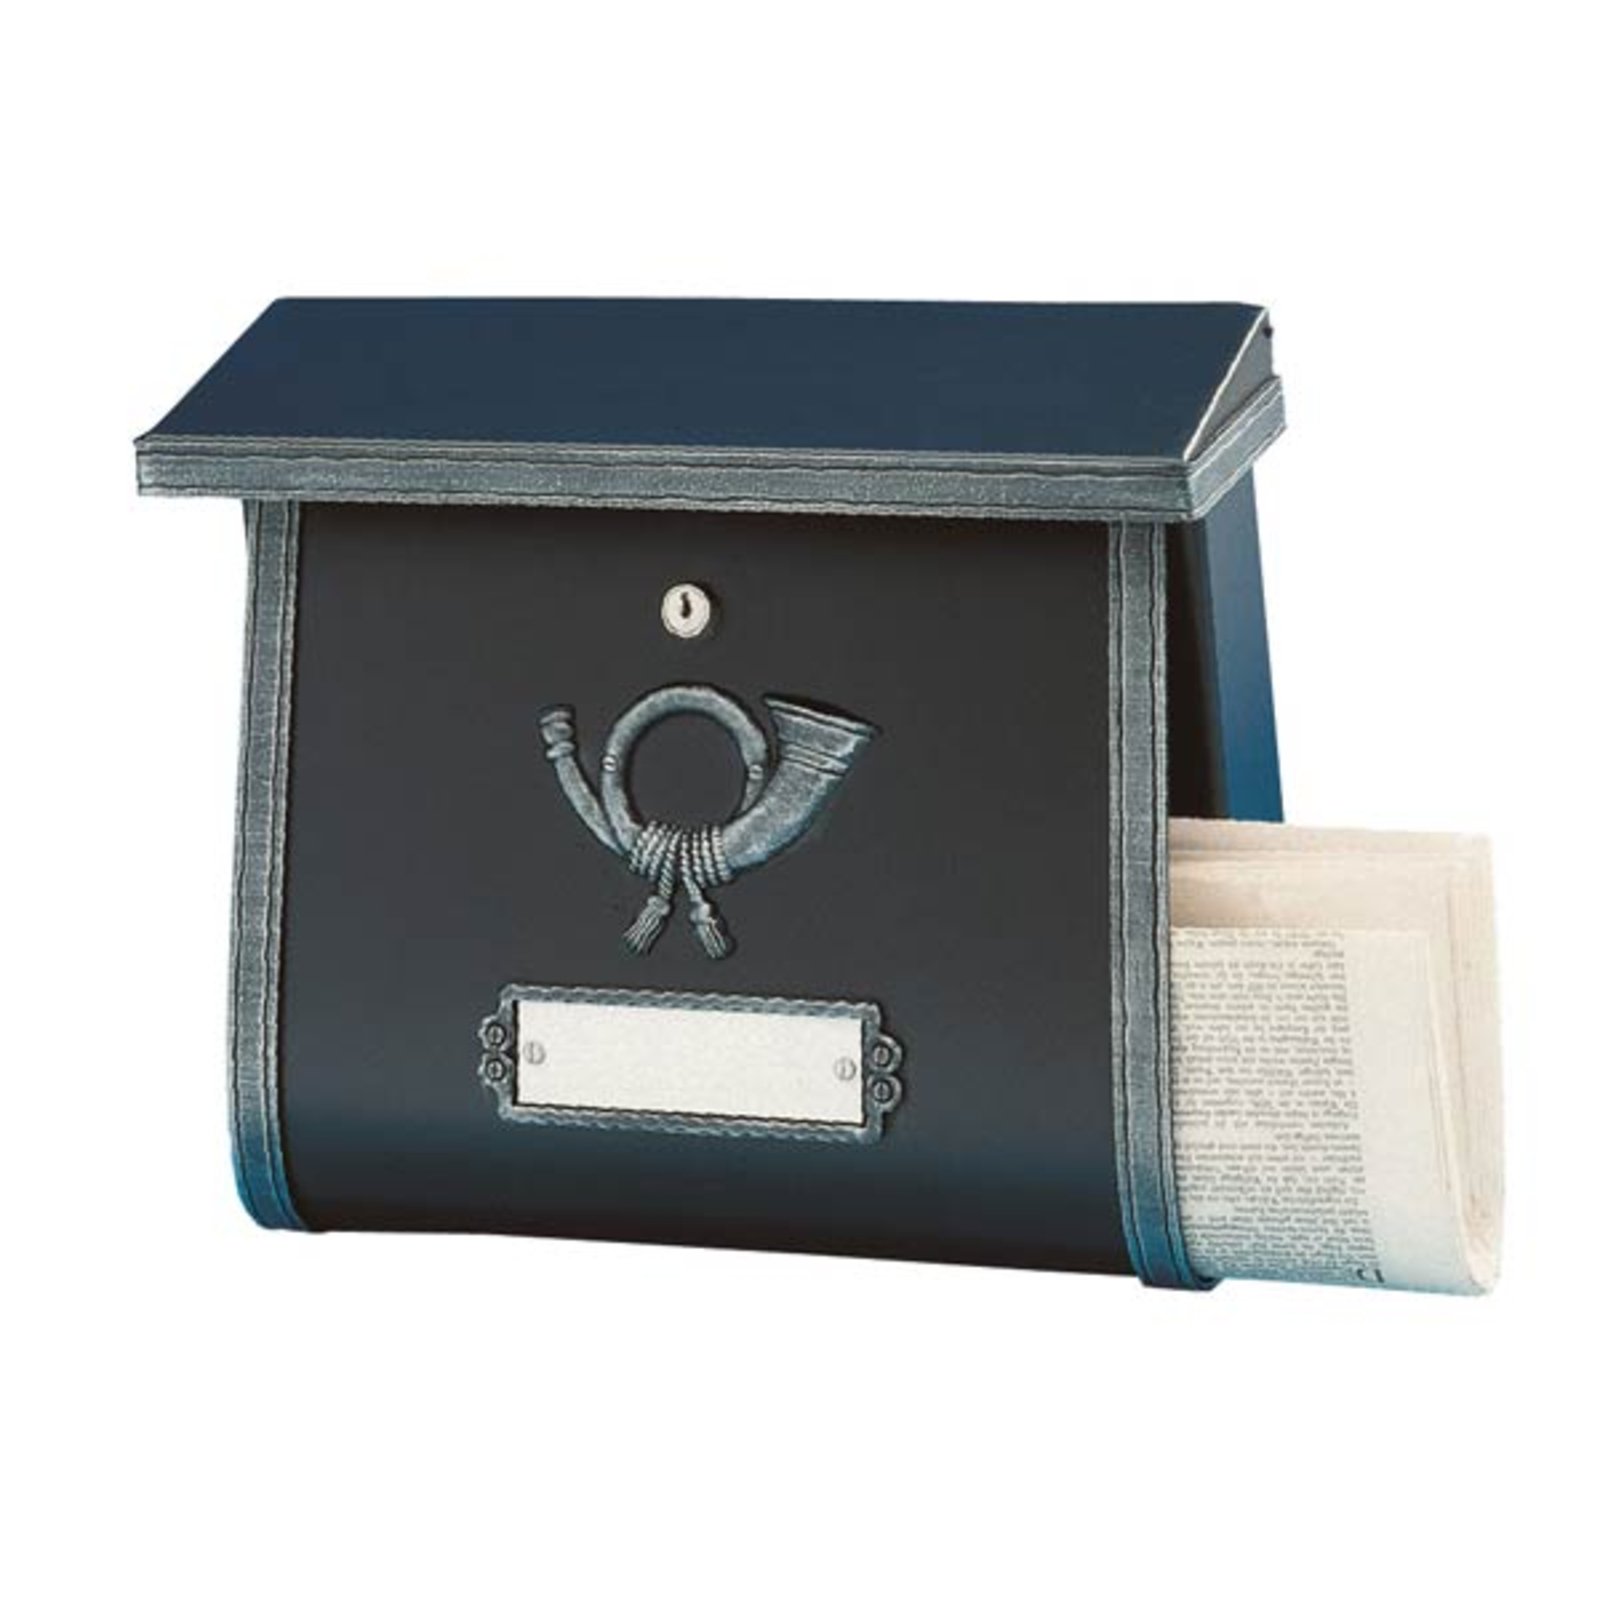 Rustic letterbox MULPI black antique